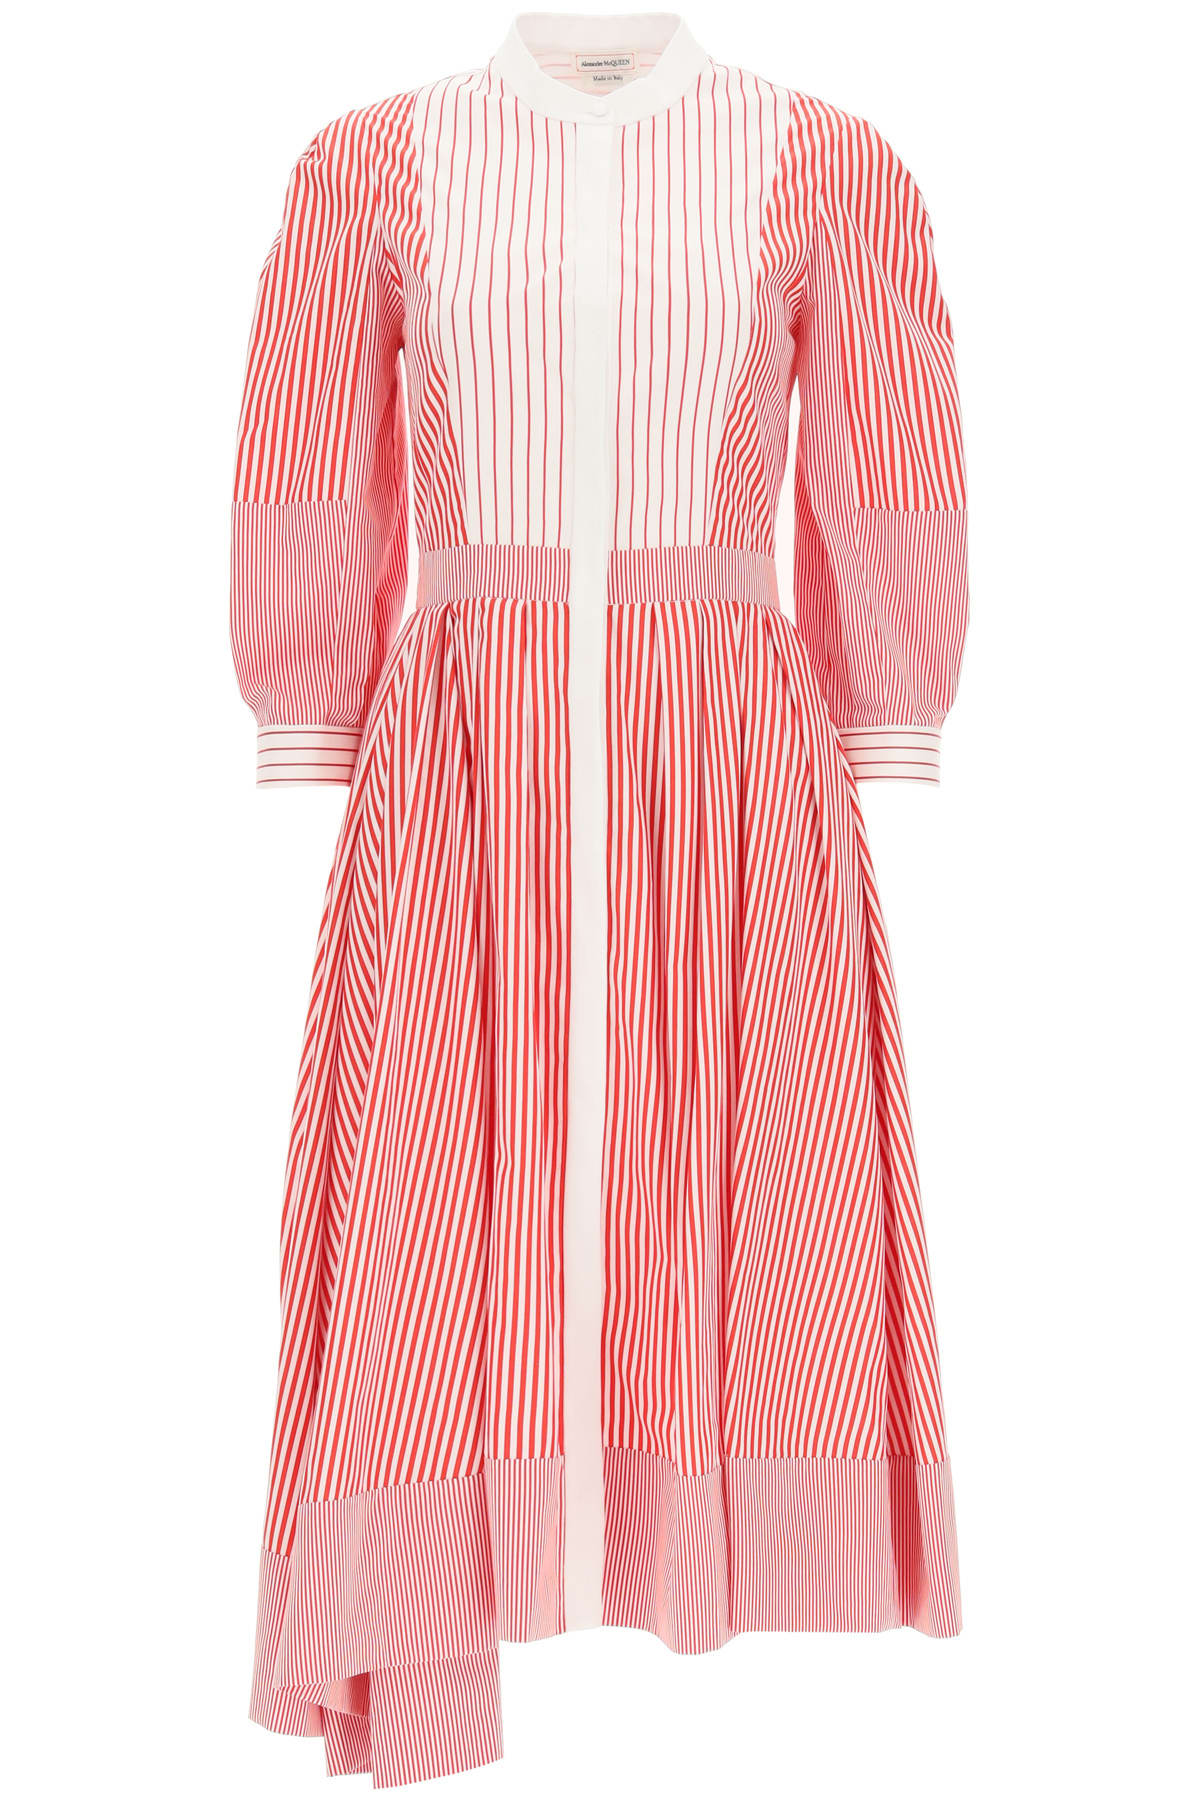 Alexander McQueen Striped Shirt Dress